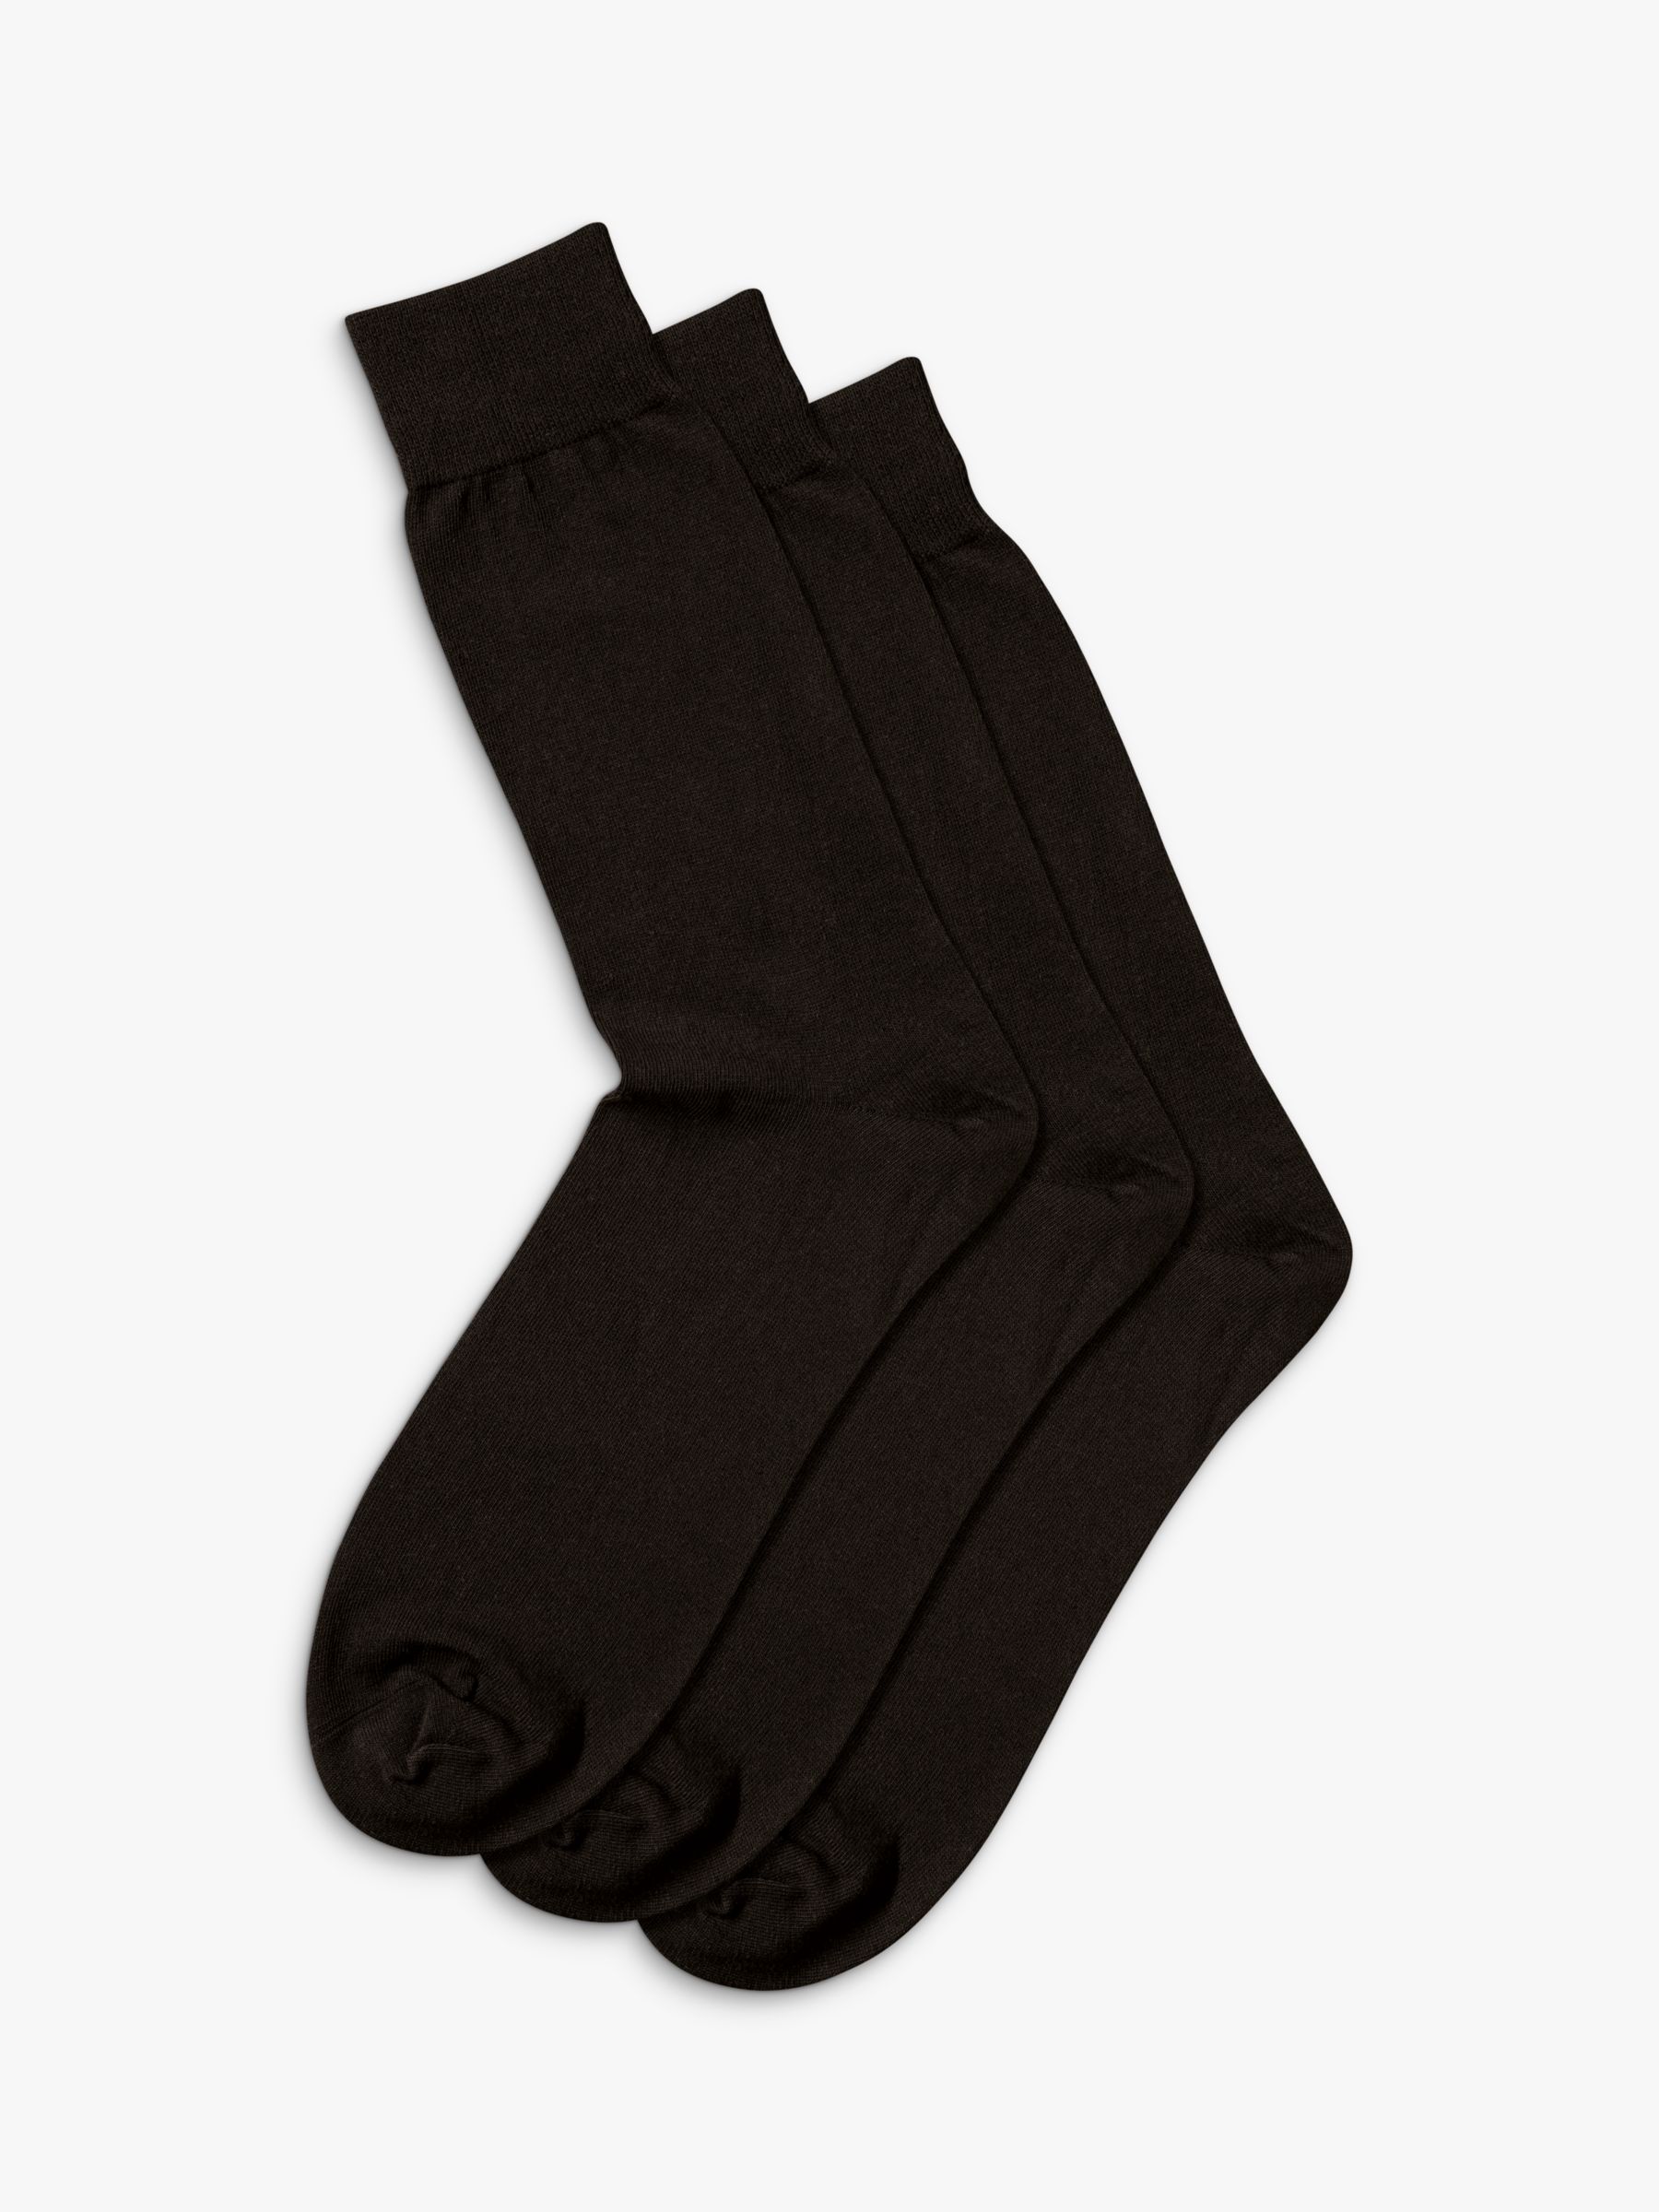 Charles Tyrwhitt Cotton Rich Socks, Pack of 3, Black, M